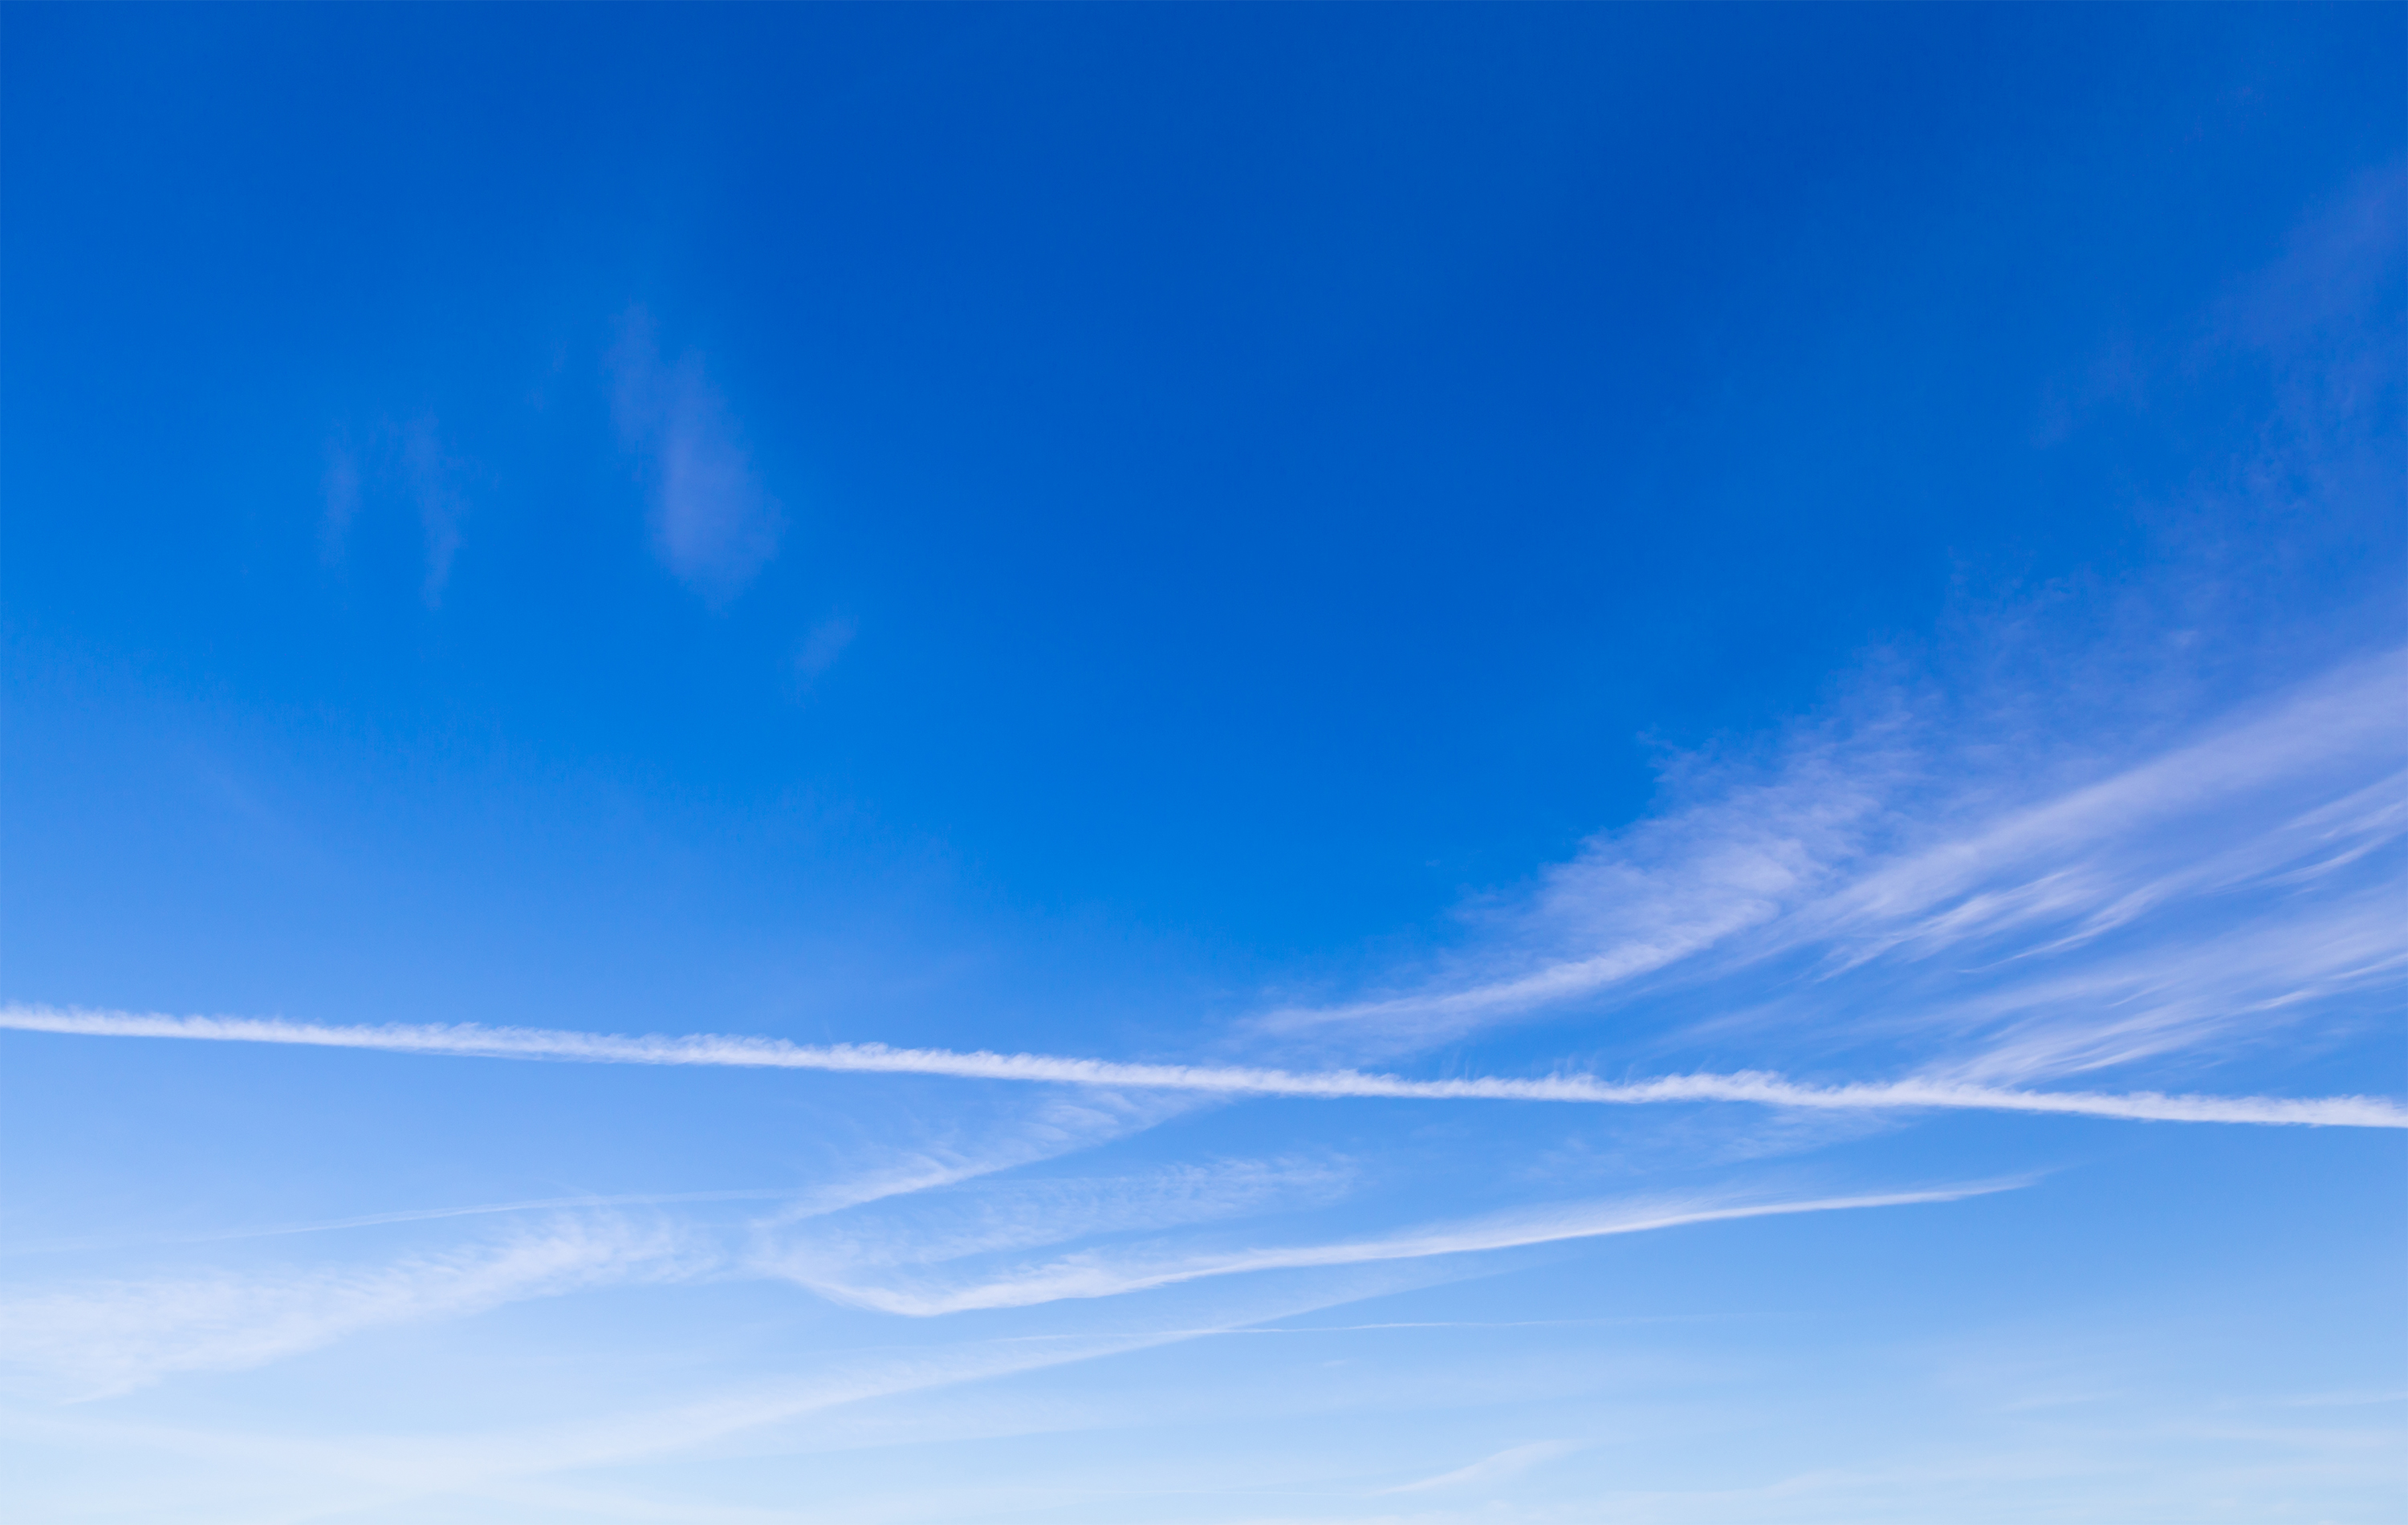 飛行機雲と青空 無料の高画質フリー写真素材 イメージズラボ